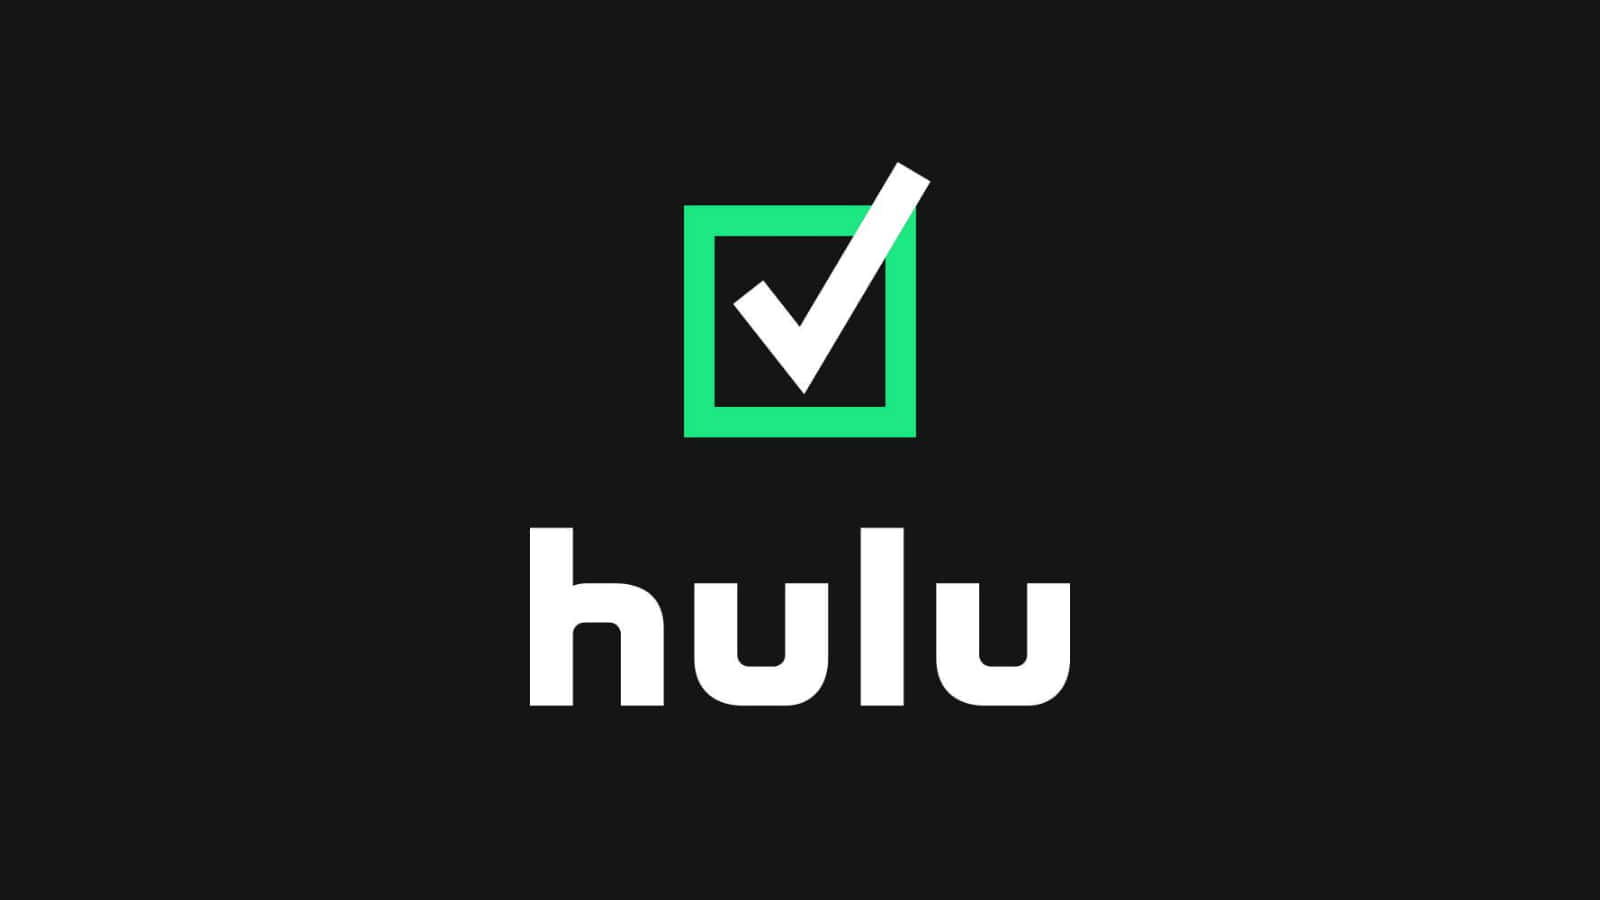 Einengemütlichen Abend Mit Hulu Genießen